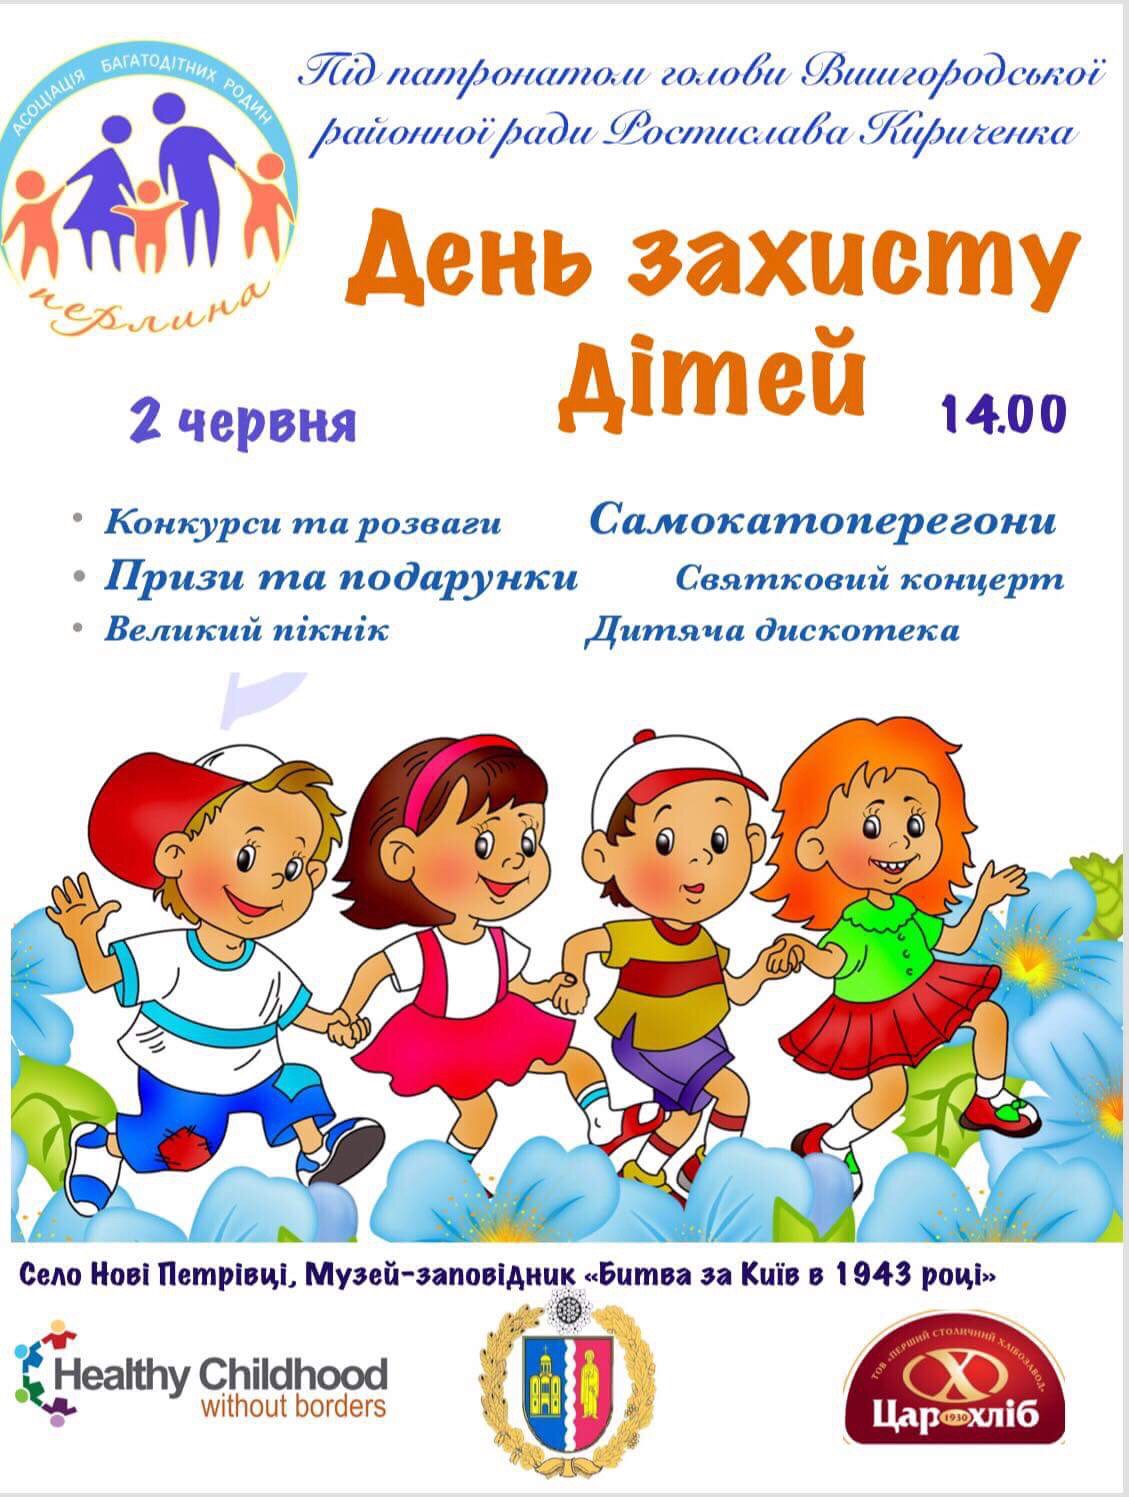 2 червня свято з нагоди Дня захисту дітей, м. Вишгород